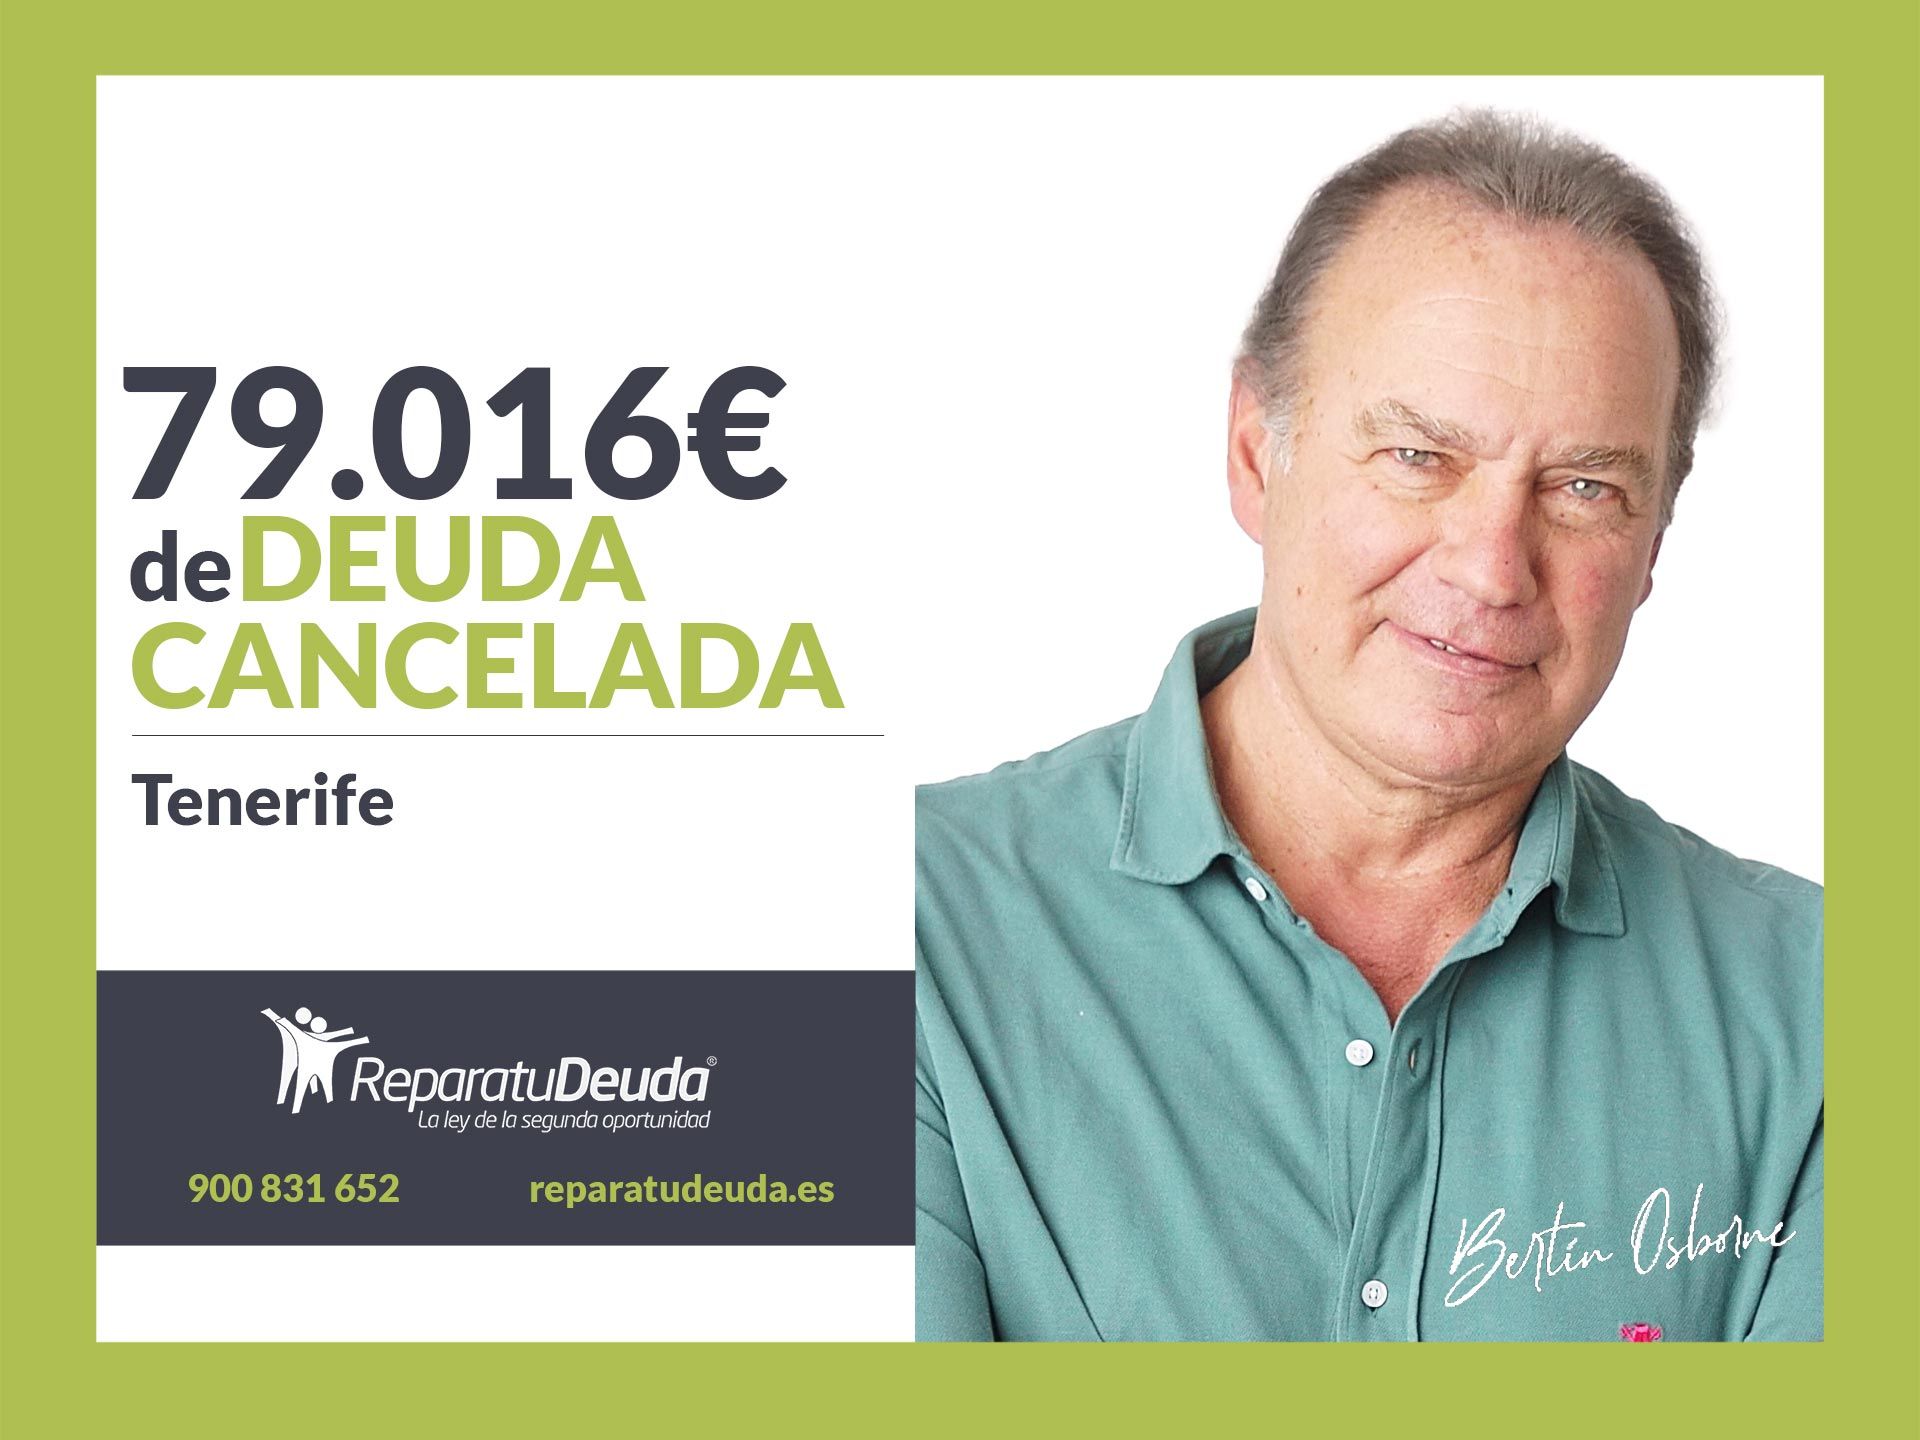 Repara tu Deuda Abogados cancela 79.016? en Tenerife (Canarias) con la Ley de Segunda Oportunidad